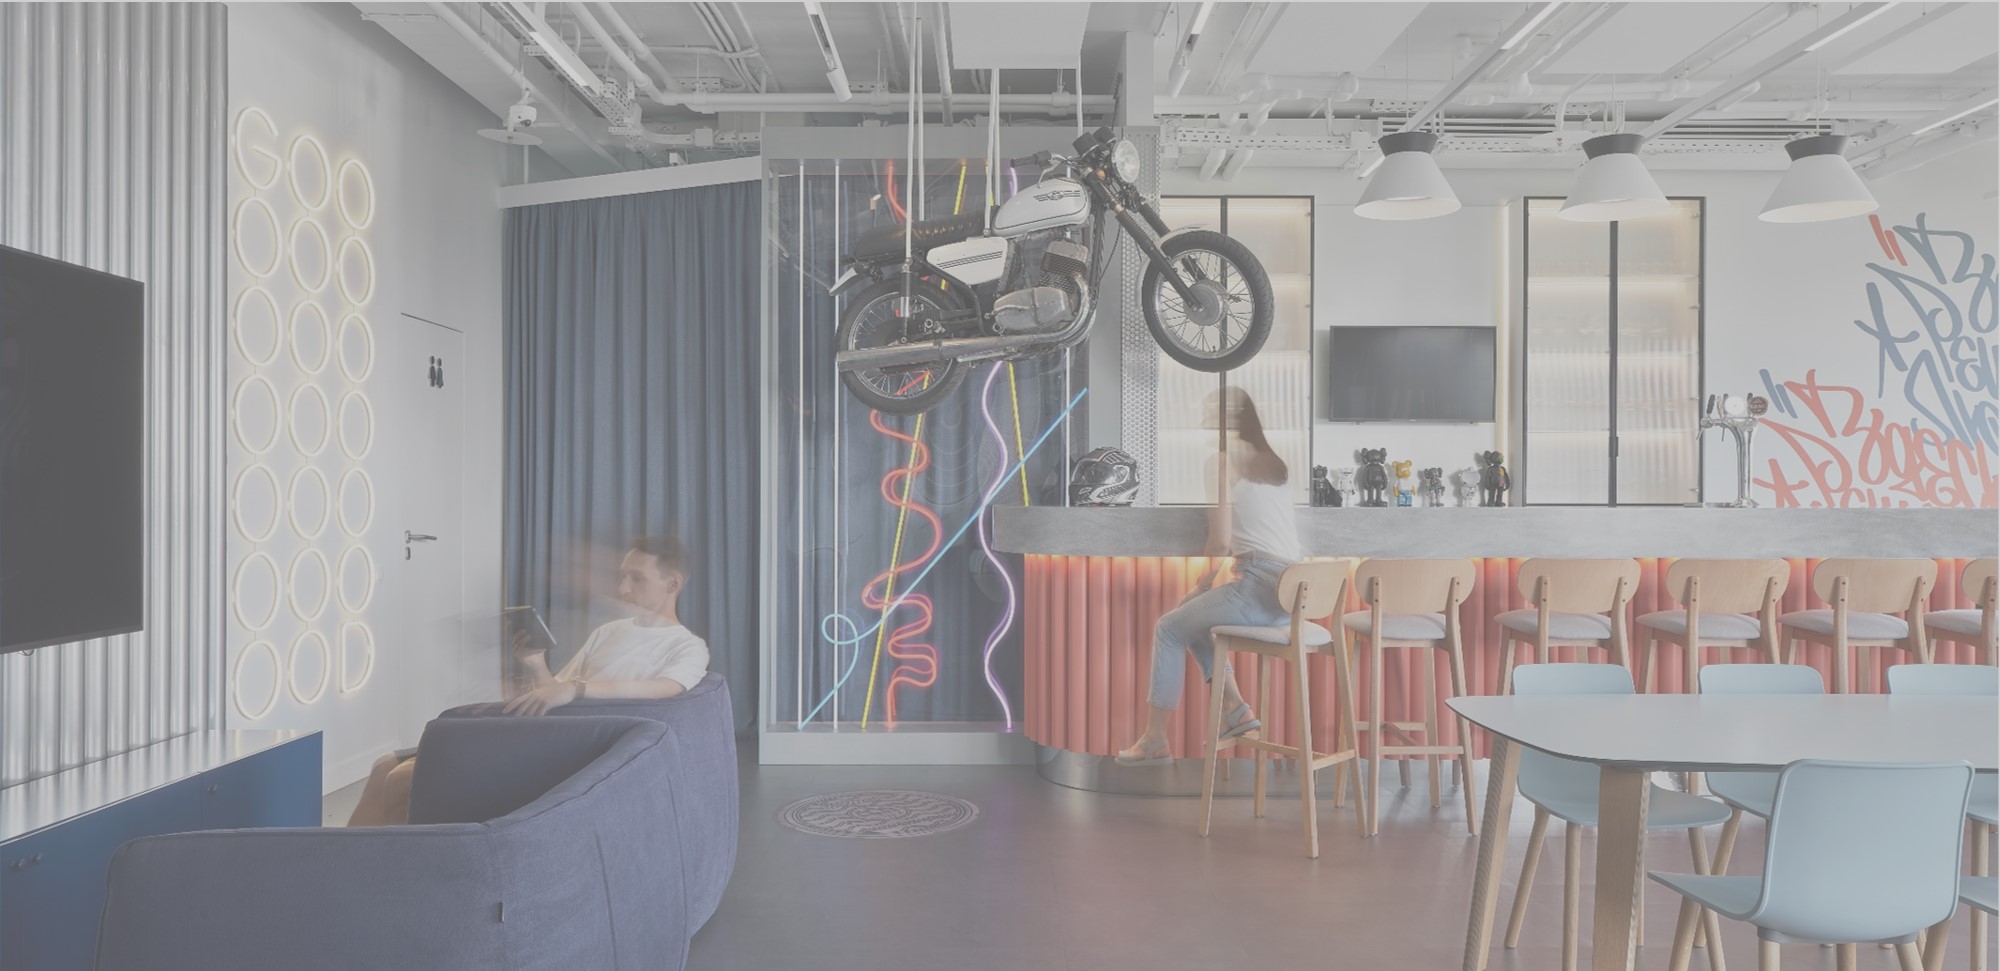 Мотоцикл под потолком, неоновый Гомер Симпсон в санузле, граффити на стенах: как мы проектировали офис для Avito и что получилось